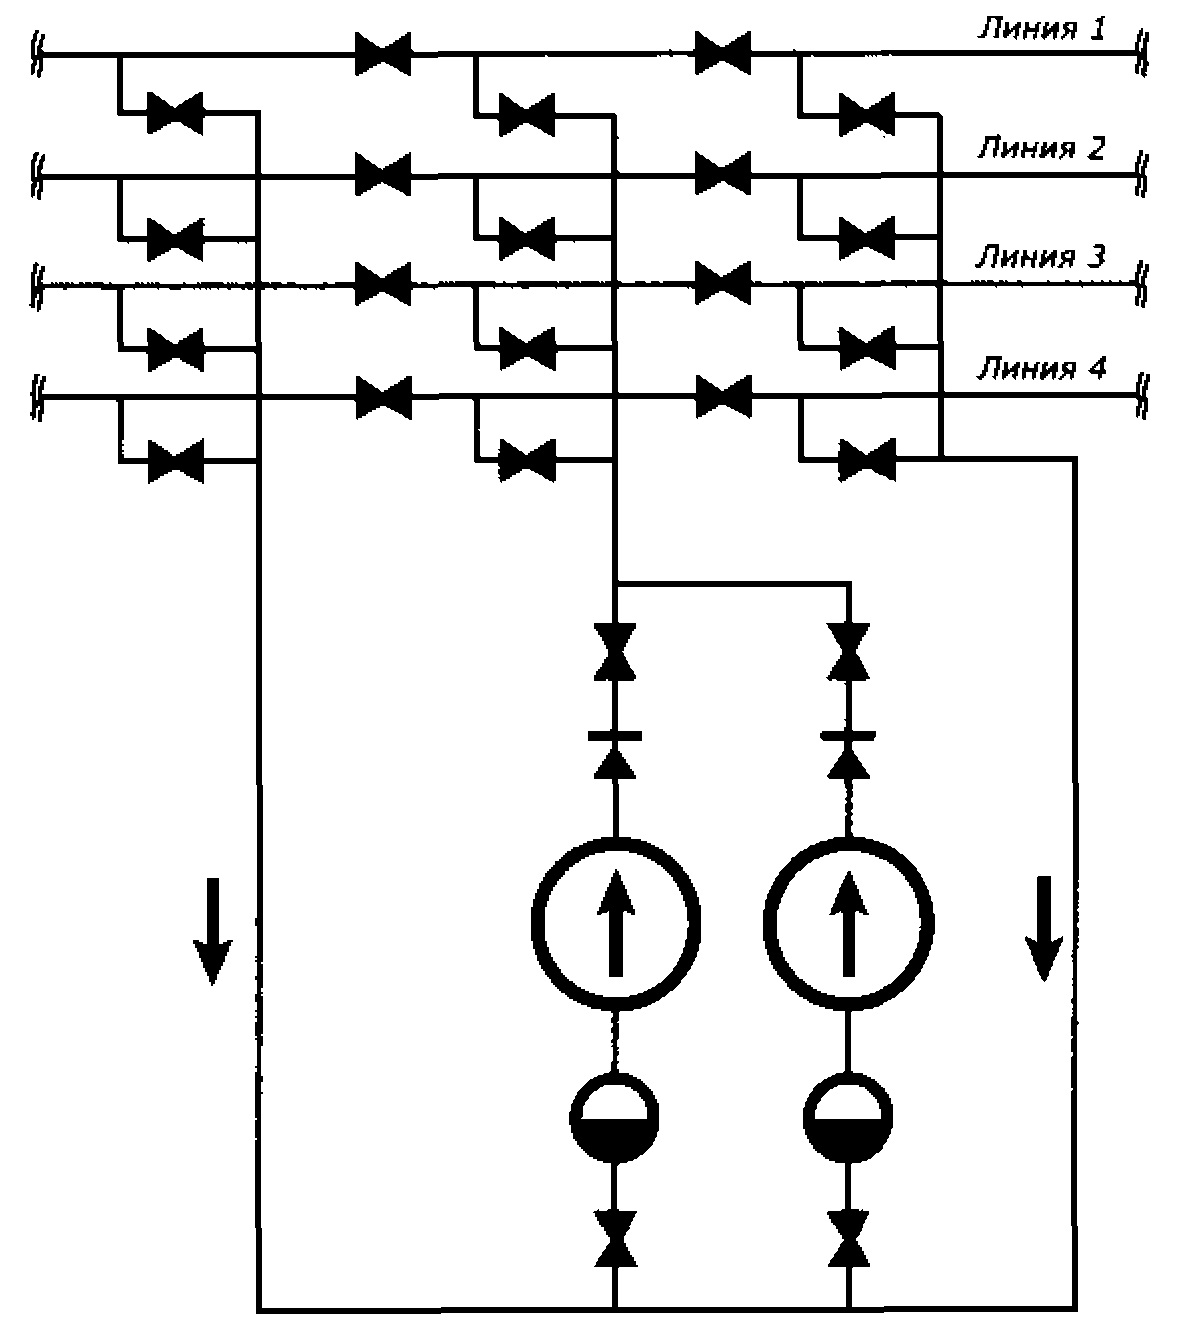 Схема обвязки насосов с трубопроводными линиями проходного вида